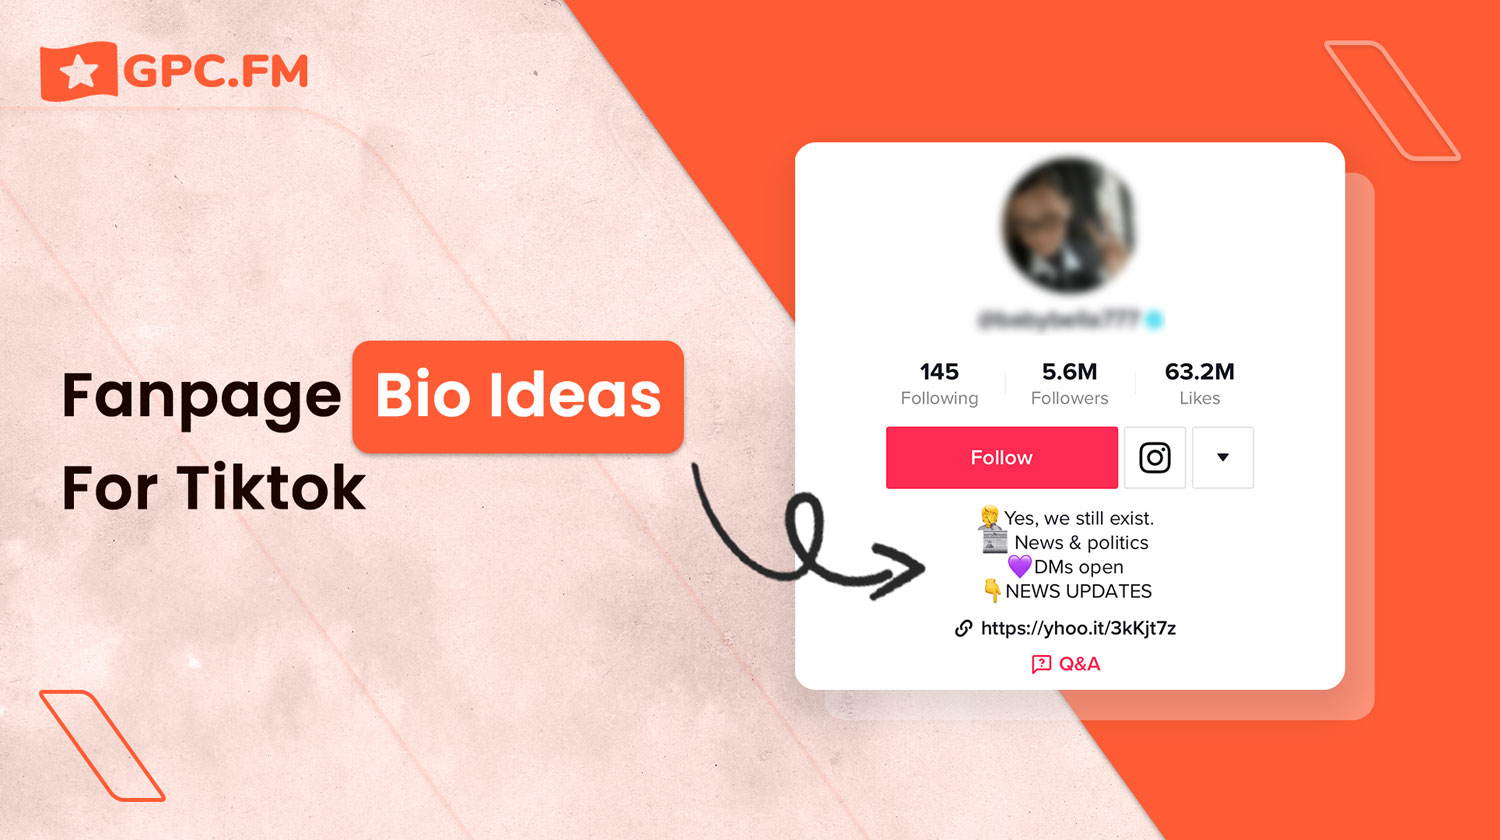 Fanpage Bio Ideas For Tiktok